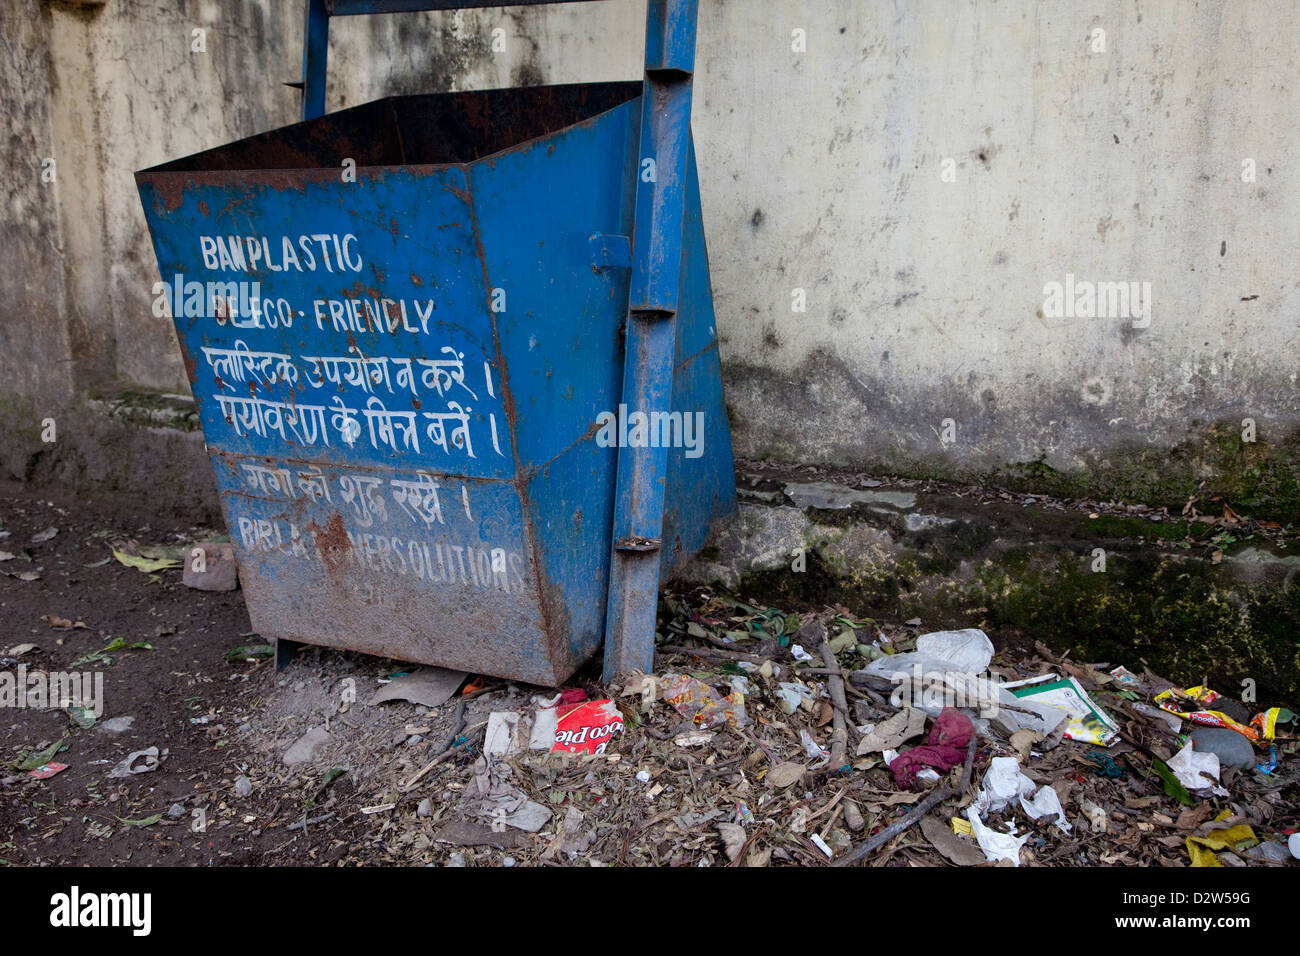 Indien, Rishikesh. Abfallbehälter mit Anti-Kunststoff-Slogan. Stockfoto